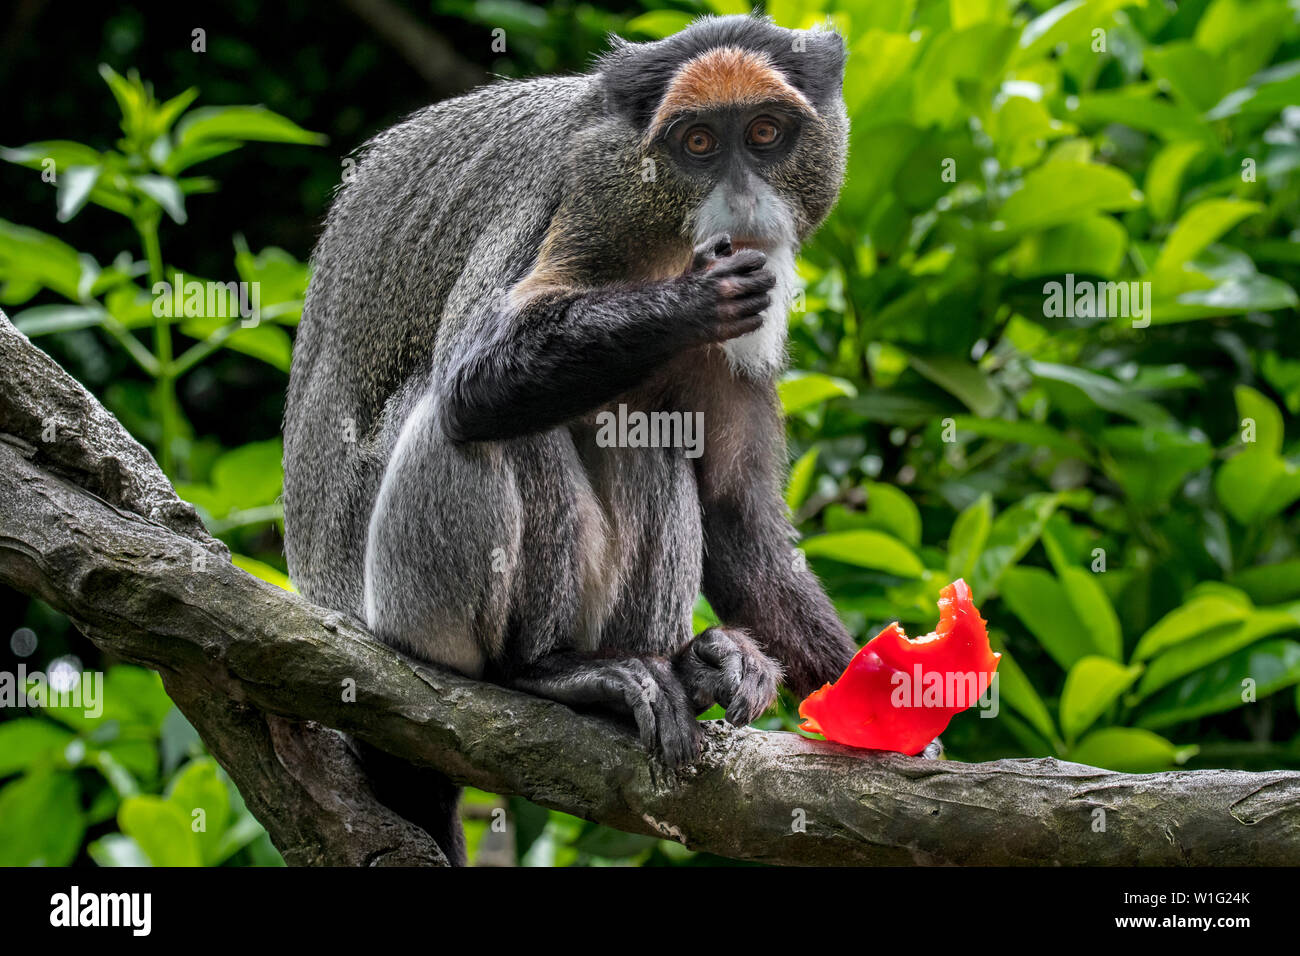 De Brazza (Cercopithecus neglectus monkey's) indigènes de l'Afrique centrale, manger des fruits dans l'arbre Banque D'Images